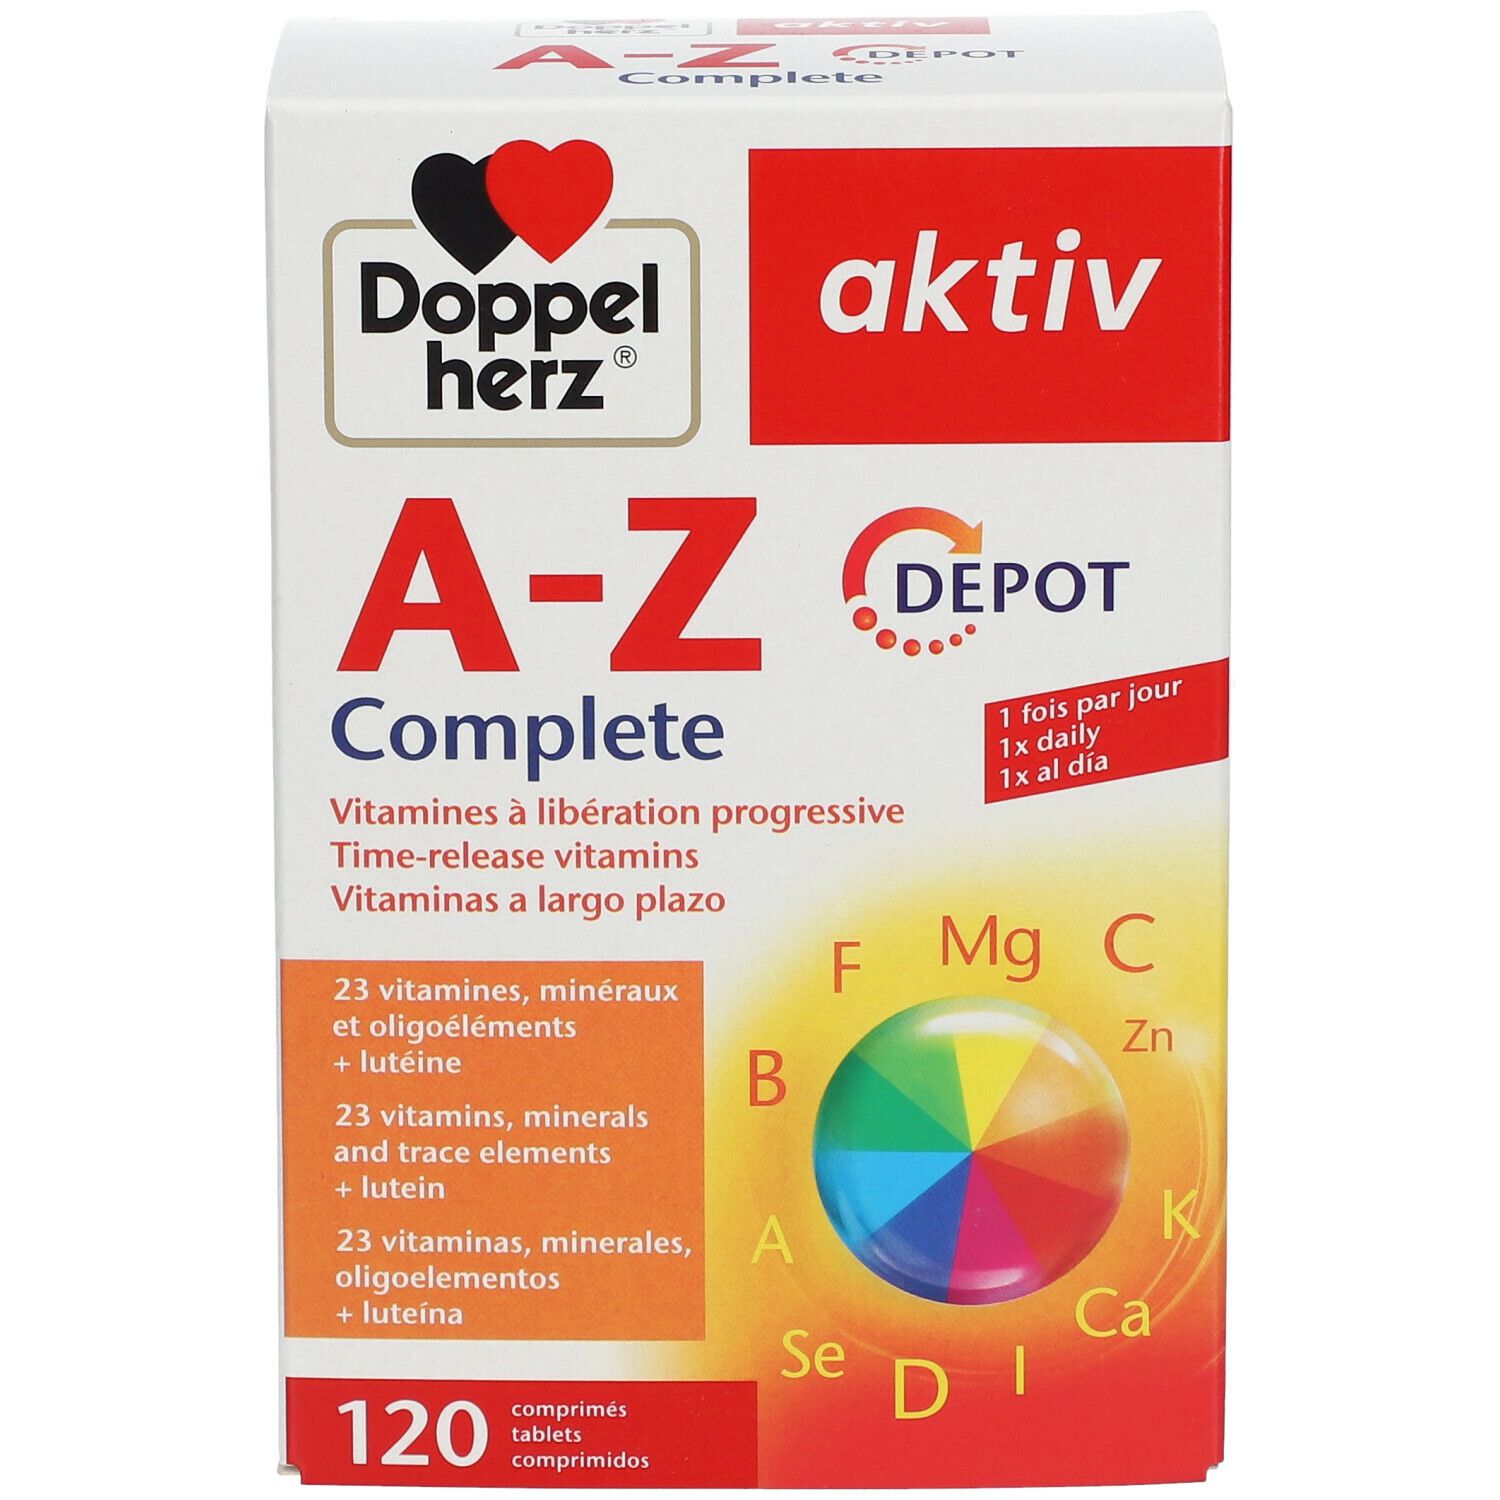 Doppelherz® aktiv A-Z Complete DEPOT